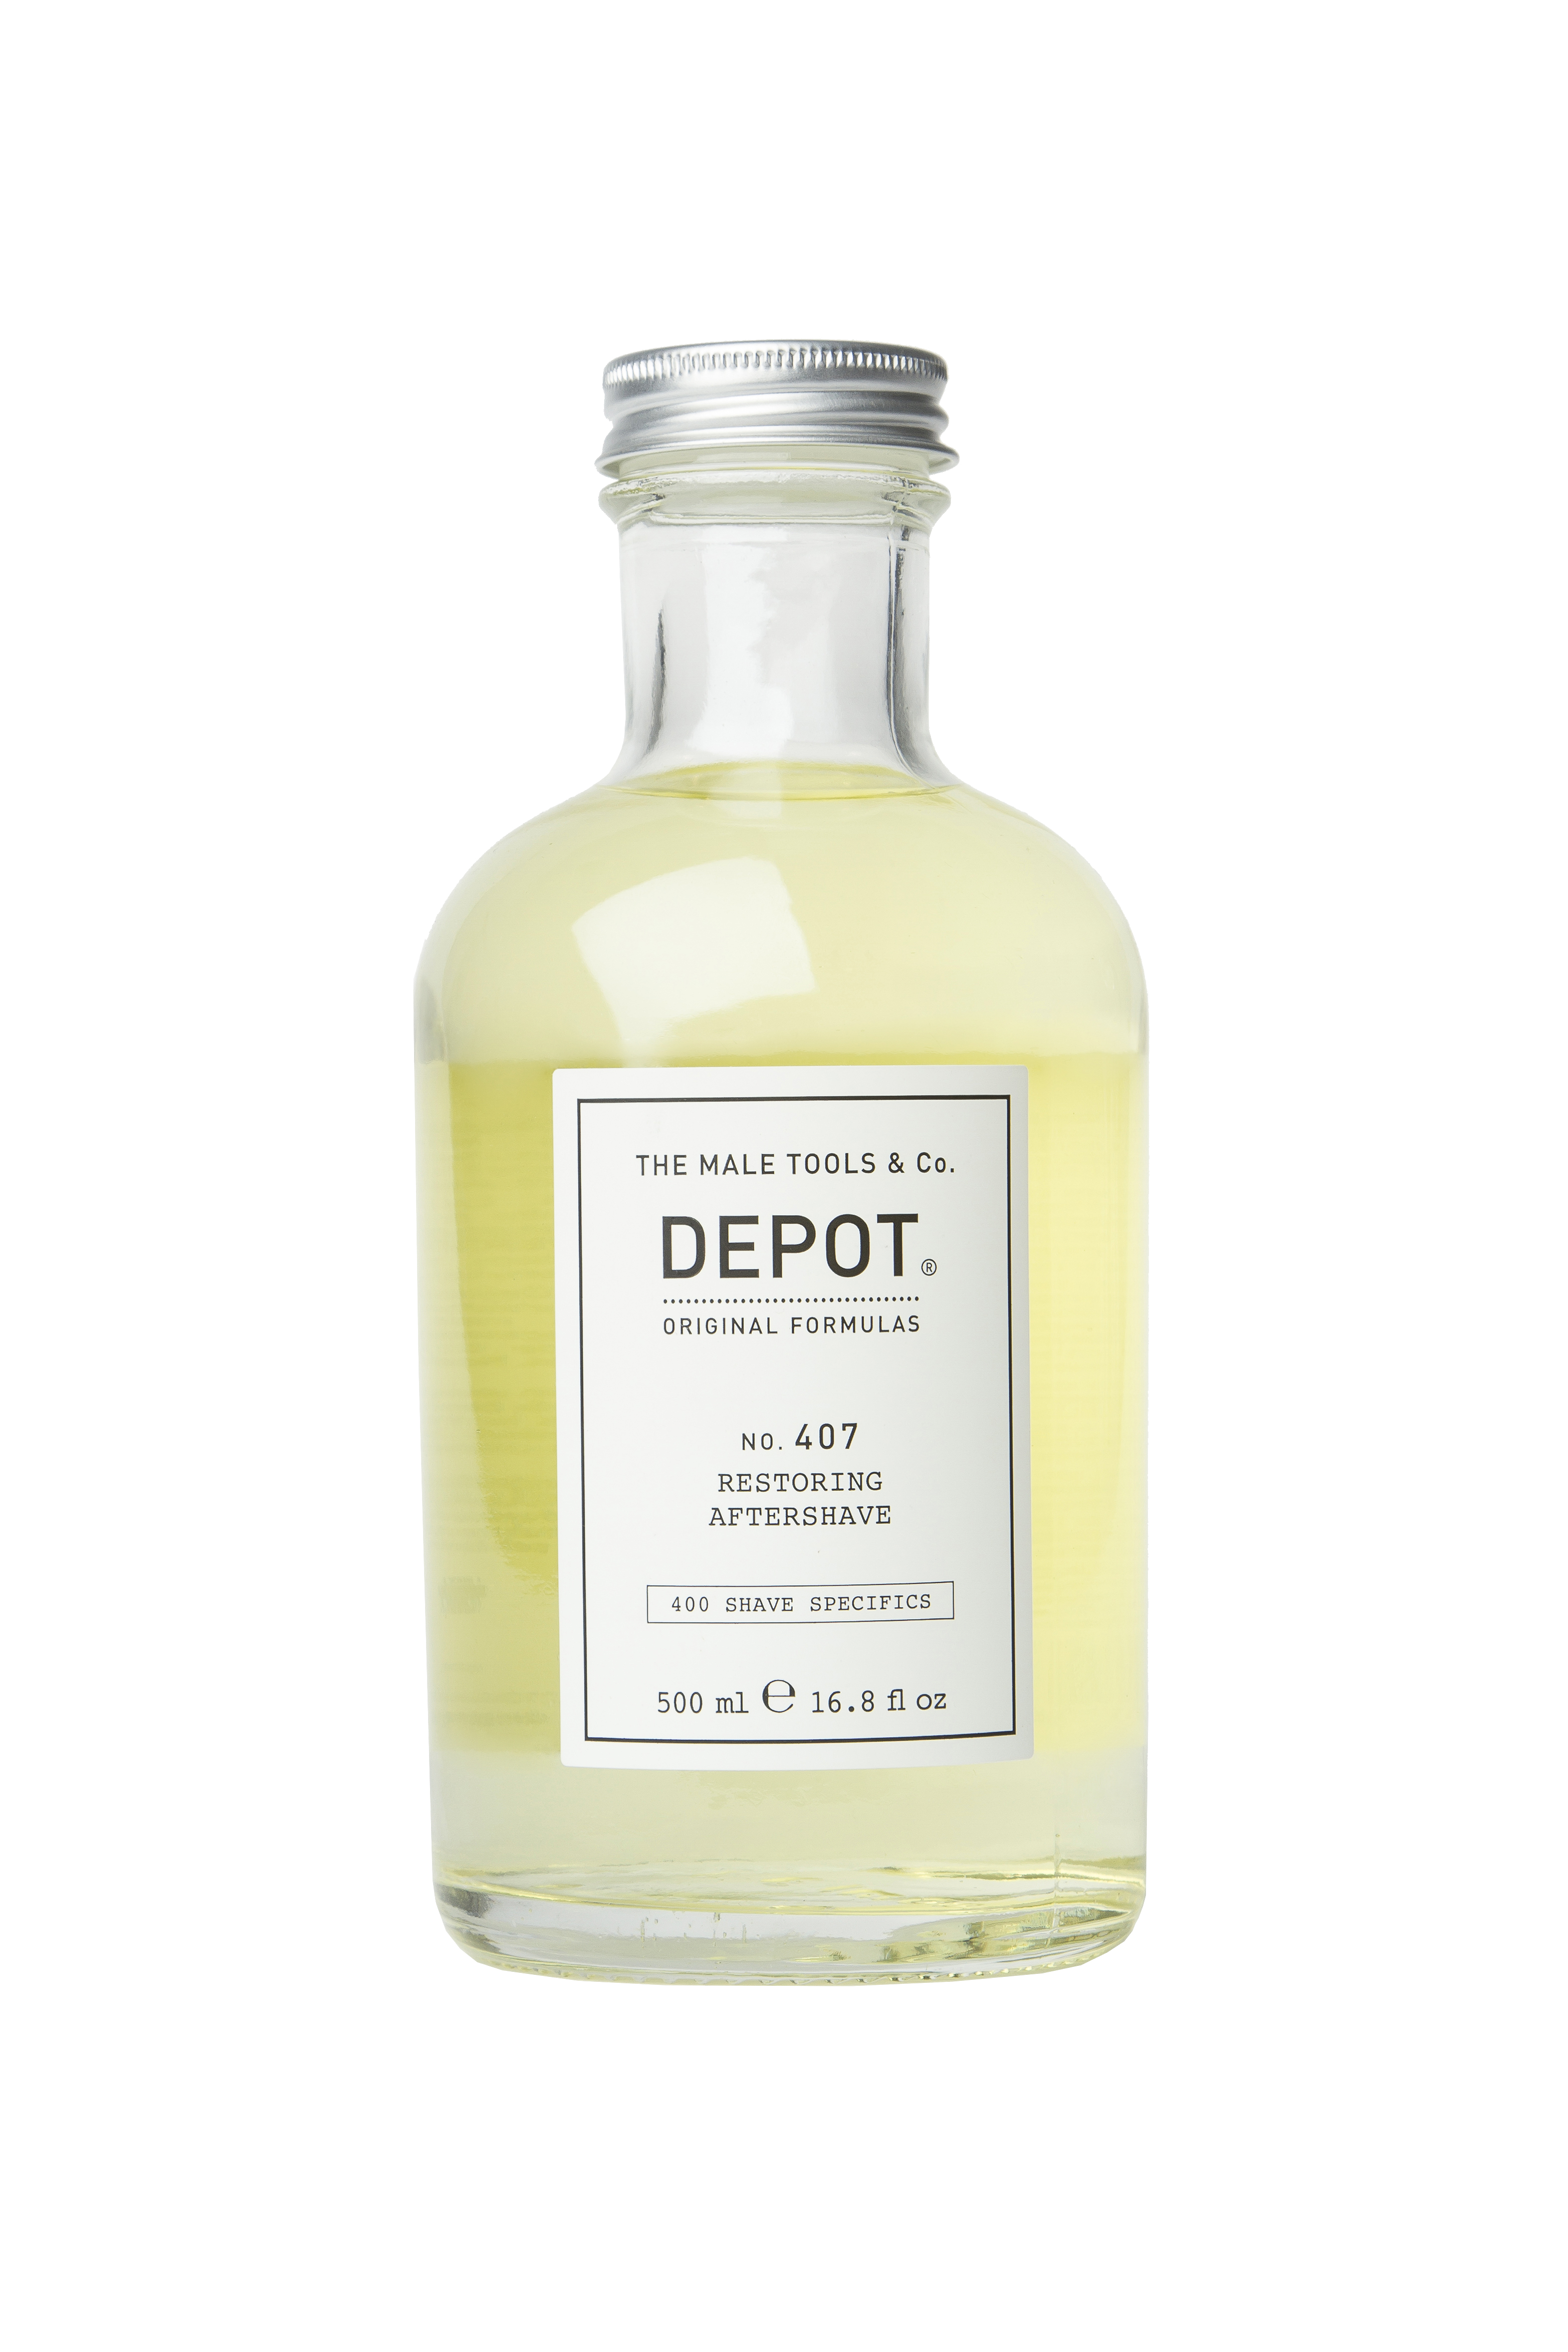 Depot - No. 407 Restoring Aftershave - 500 ml